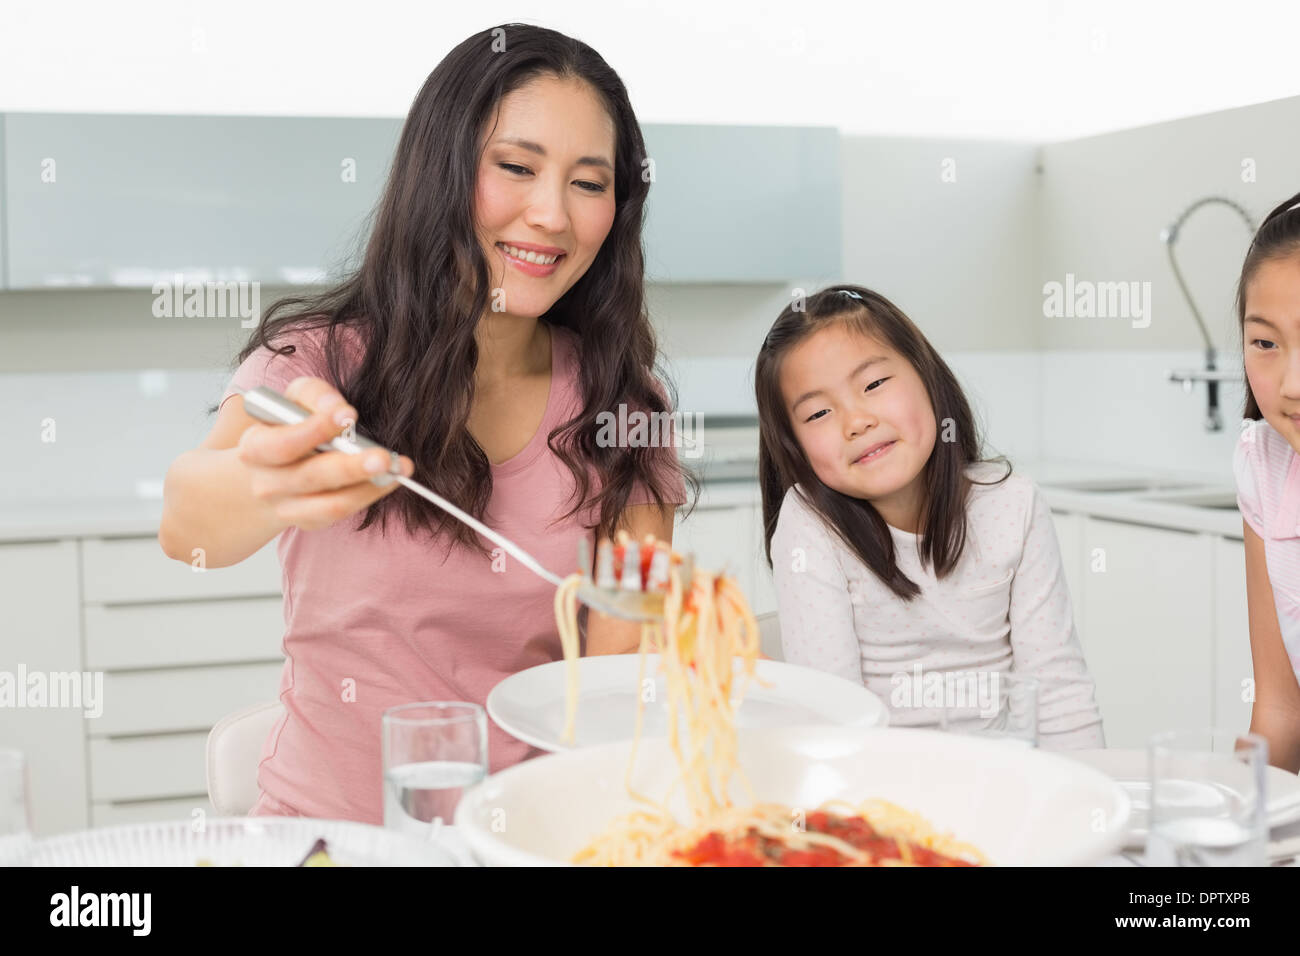 Mädchen beobachten glückliche Frau dienen Spaghetti in Küche Stockfoto